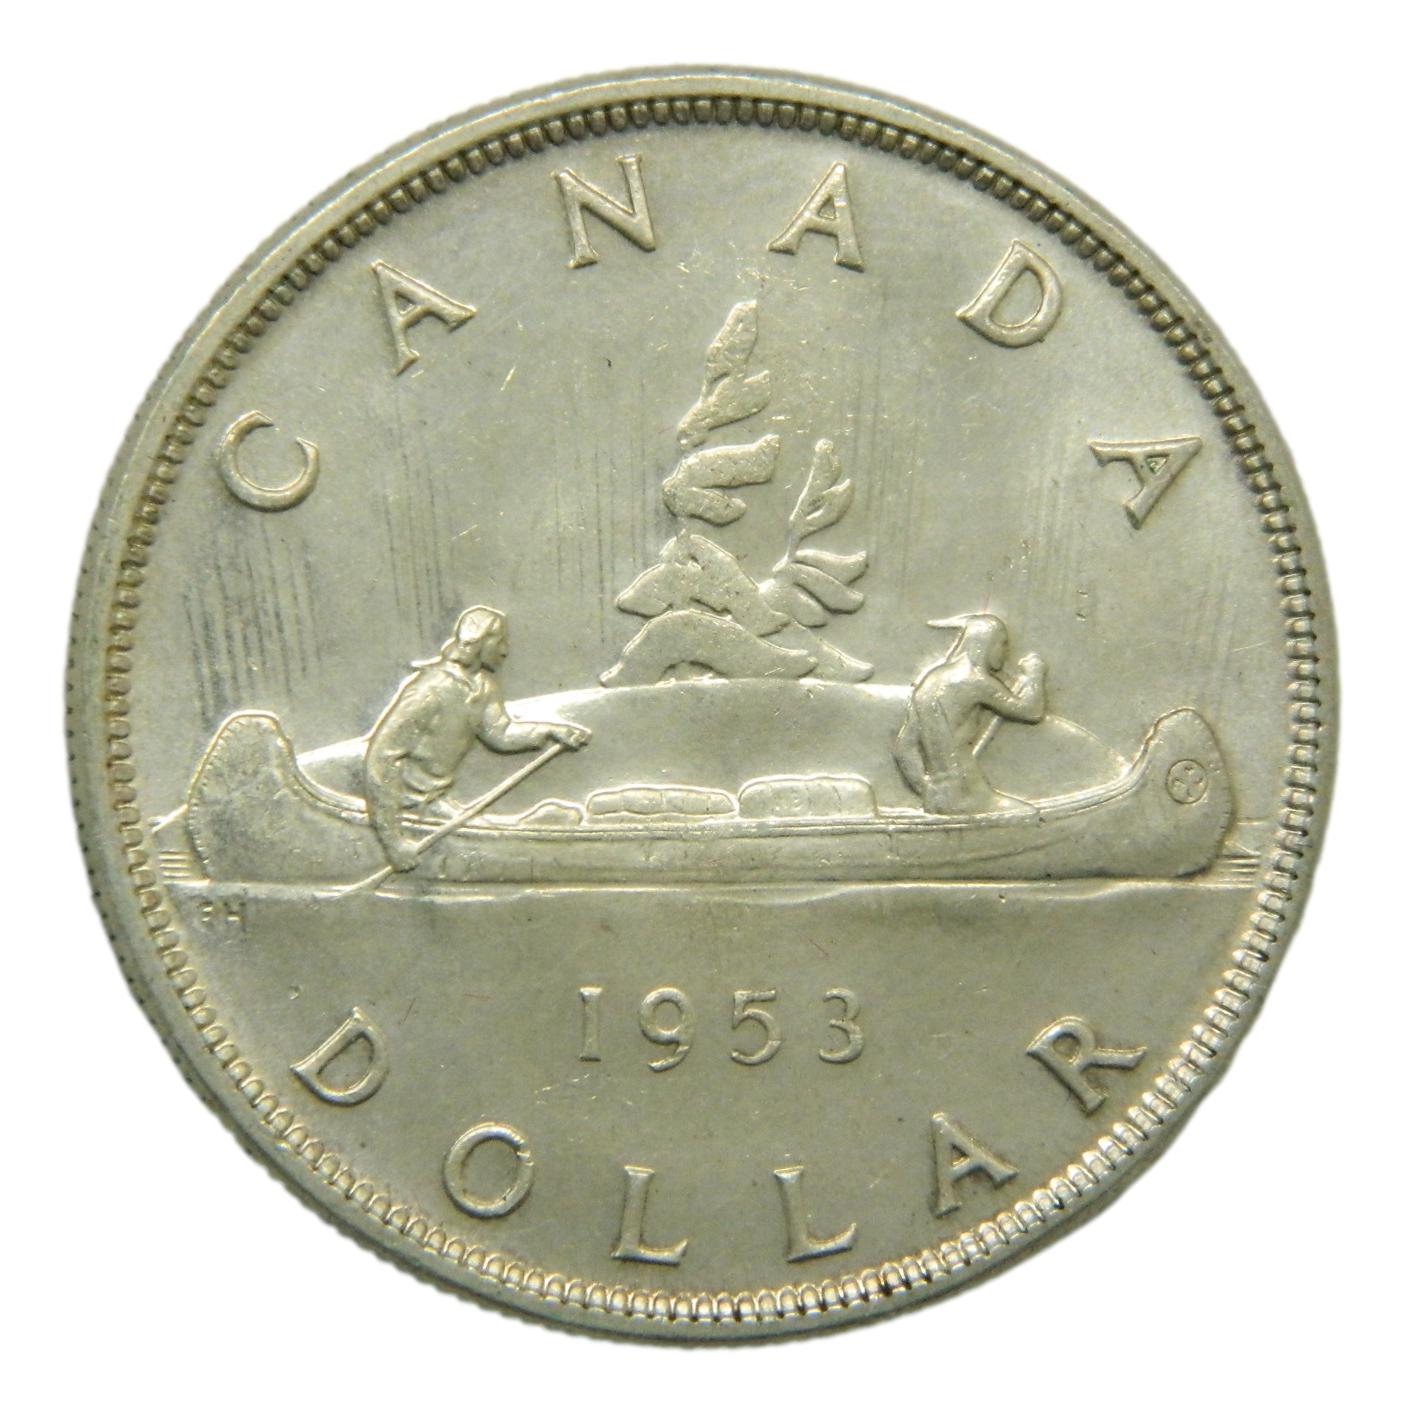 1953 - CANADA - DOLLAR - ELIZABETH II - PLATA